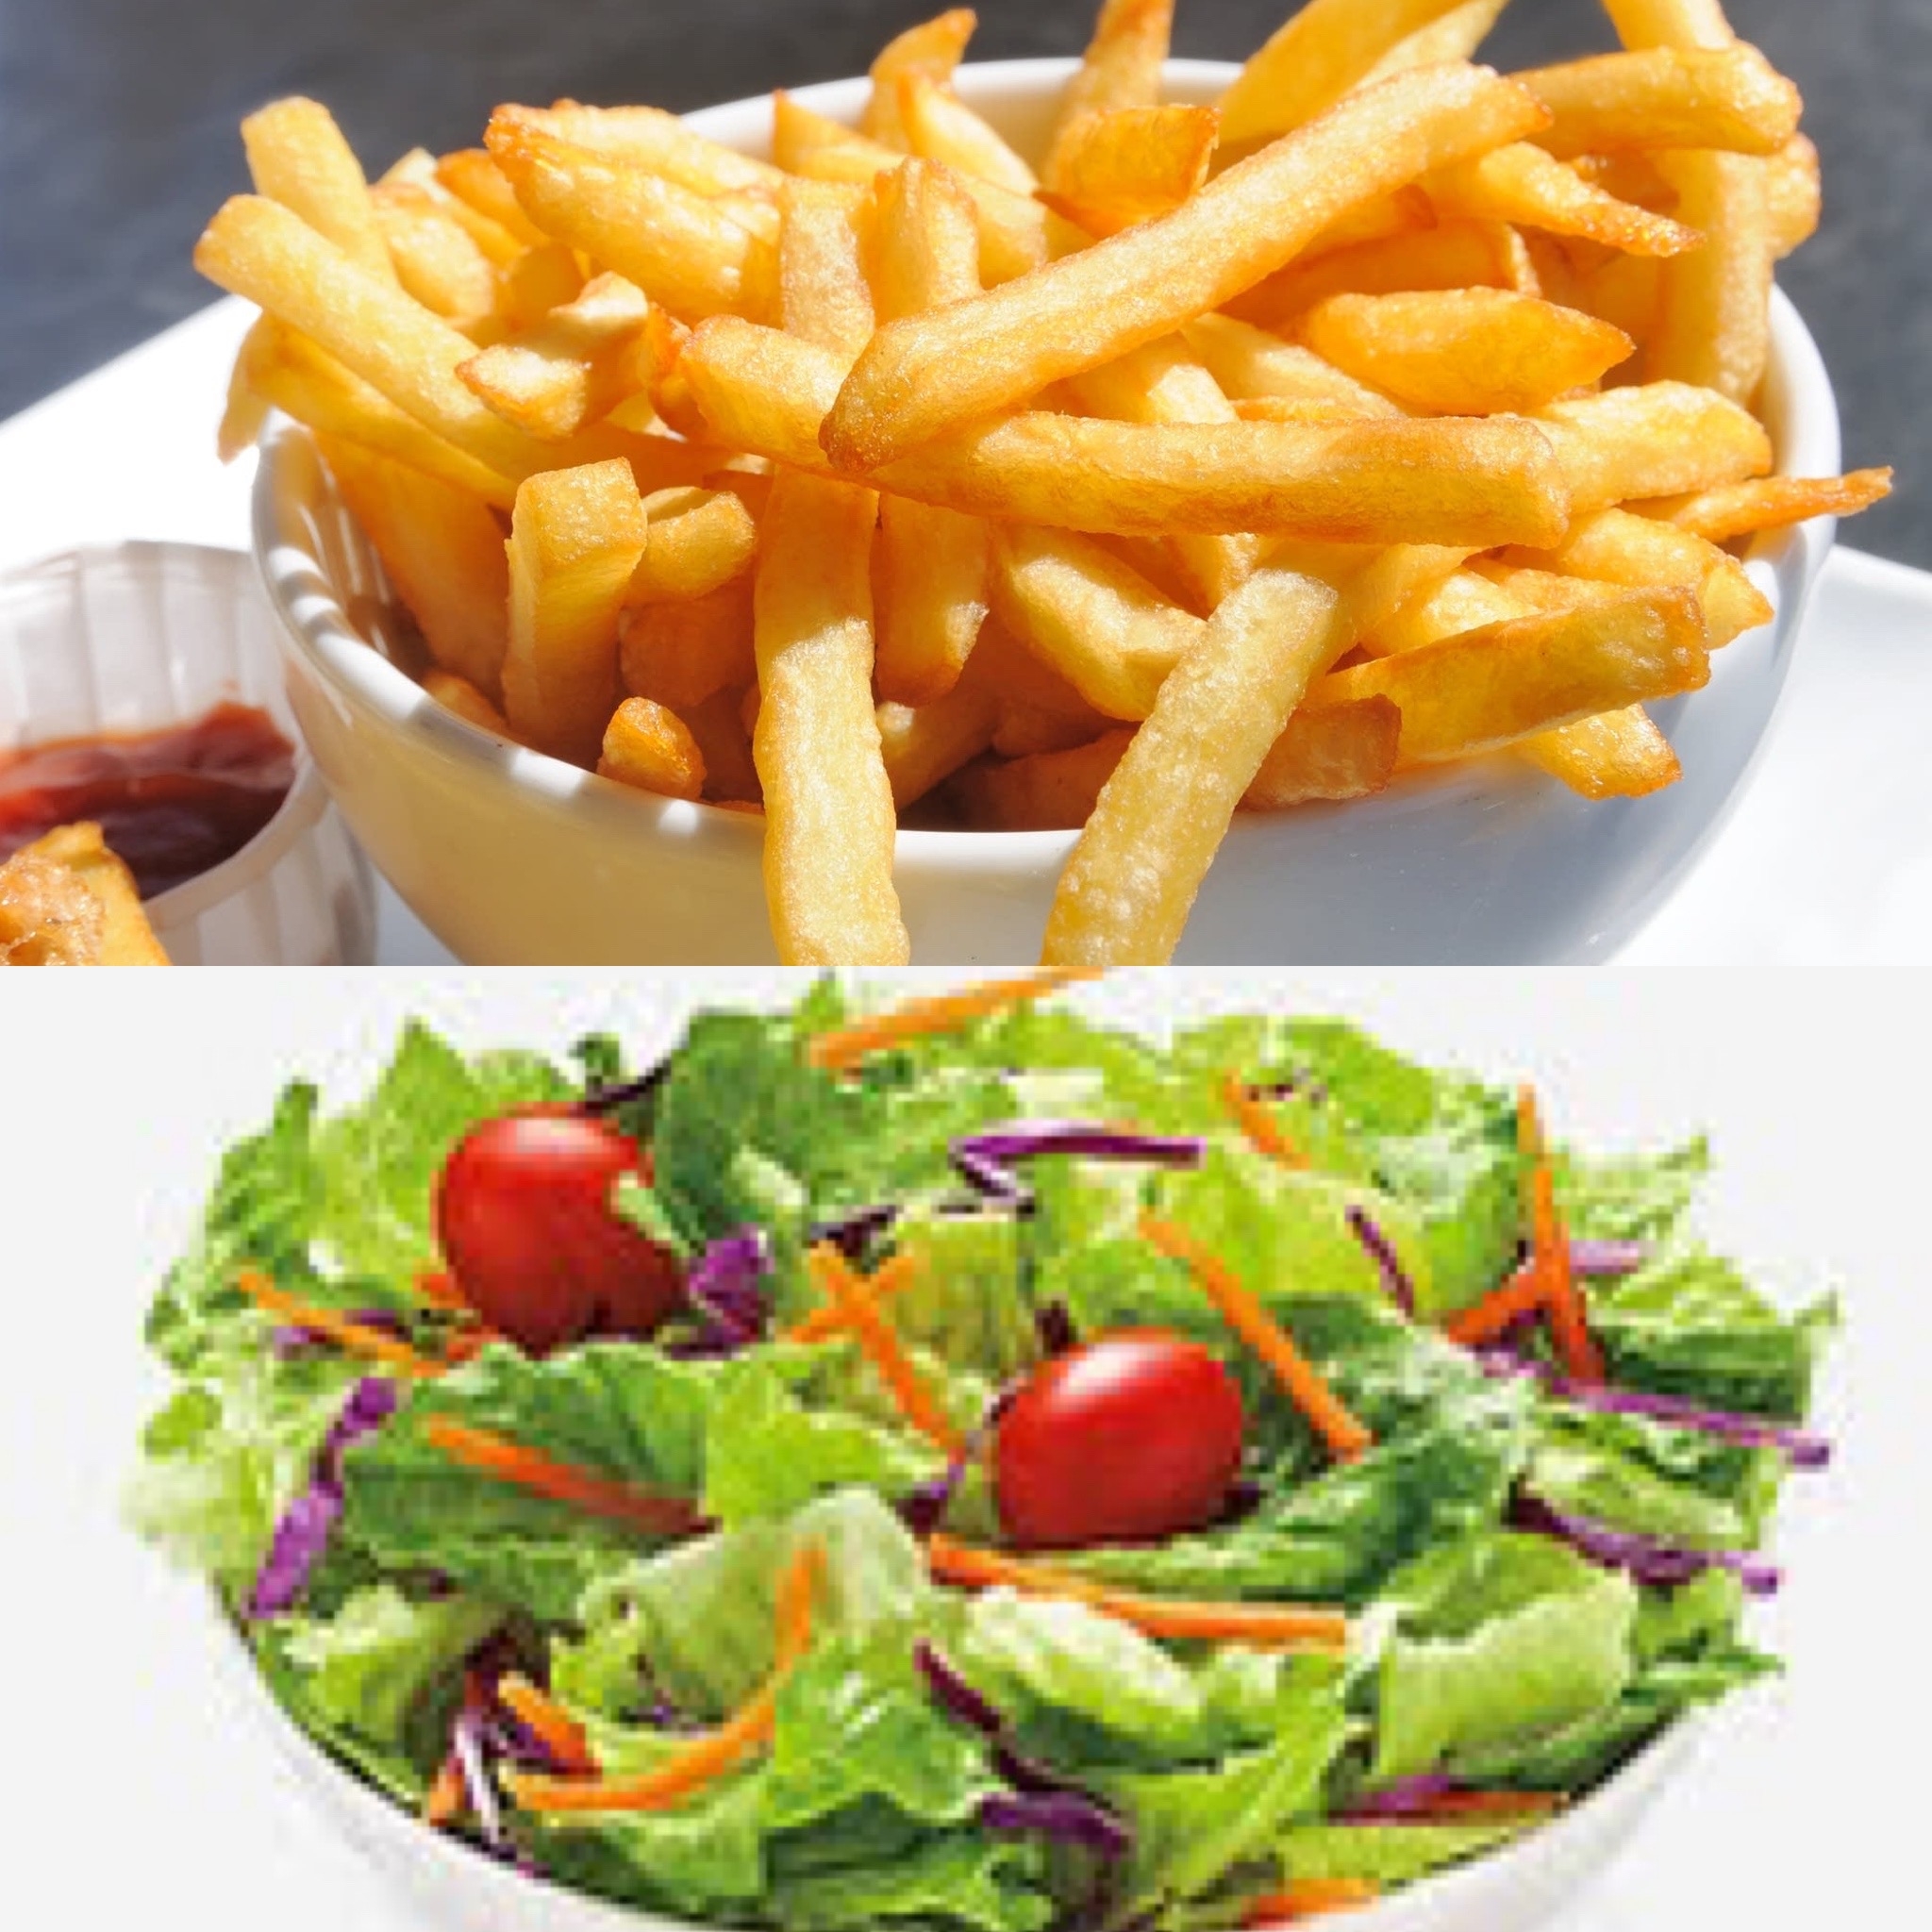 Side salad or side of fries